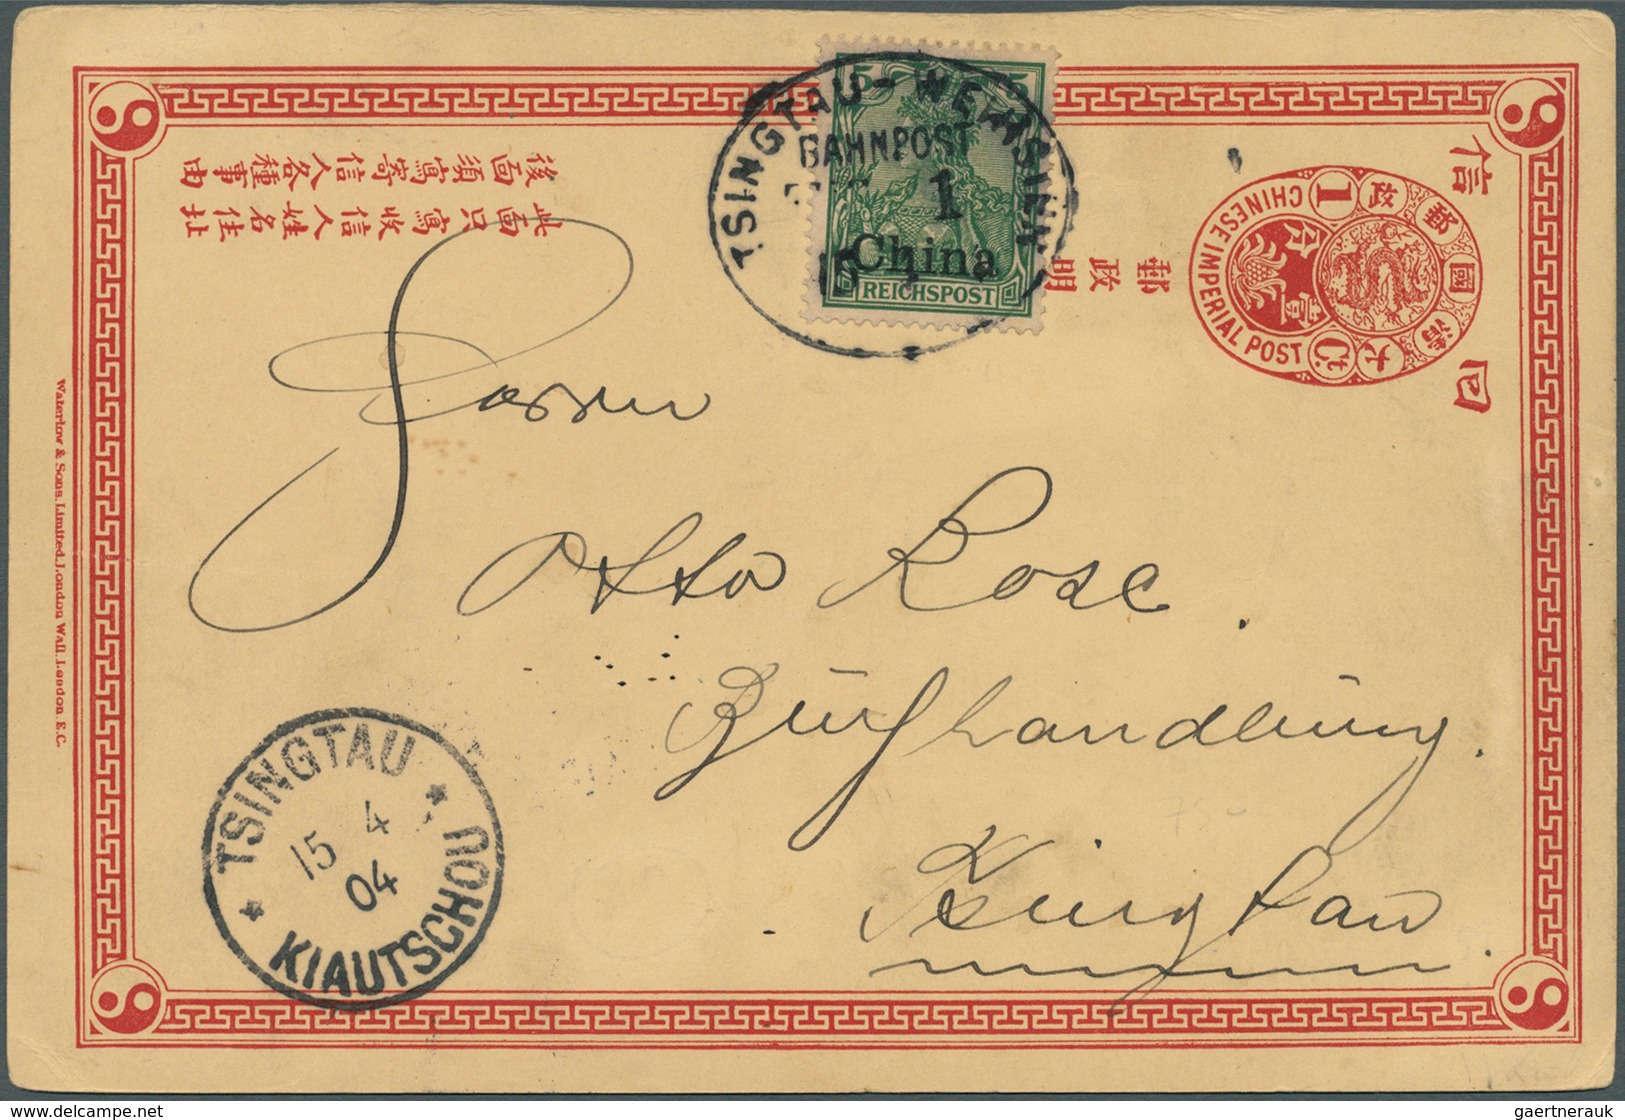 Deutsche Post In China - Stempel: 1904, Chinesische Ganzsachenkarte Mit Zusatzfrankatur 5 Pf Germani - China (offices)